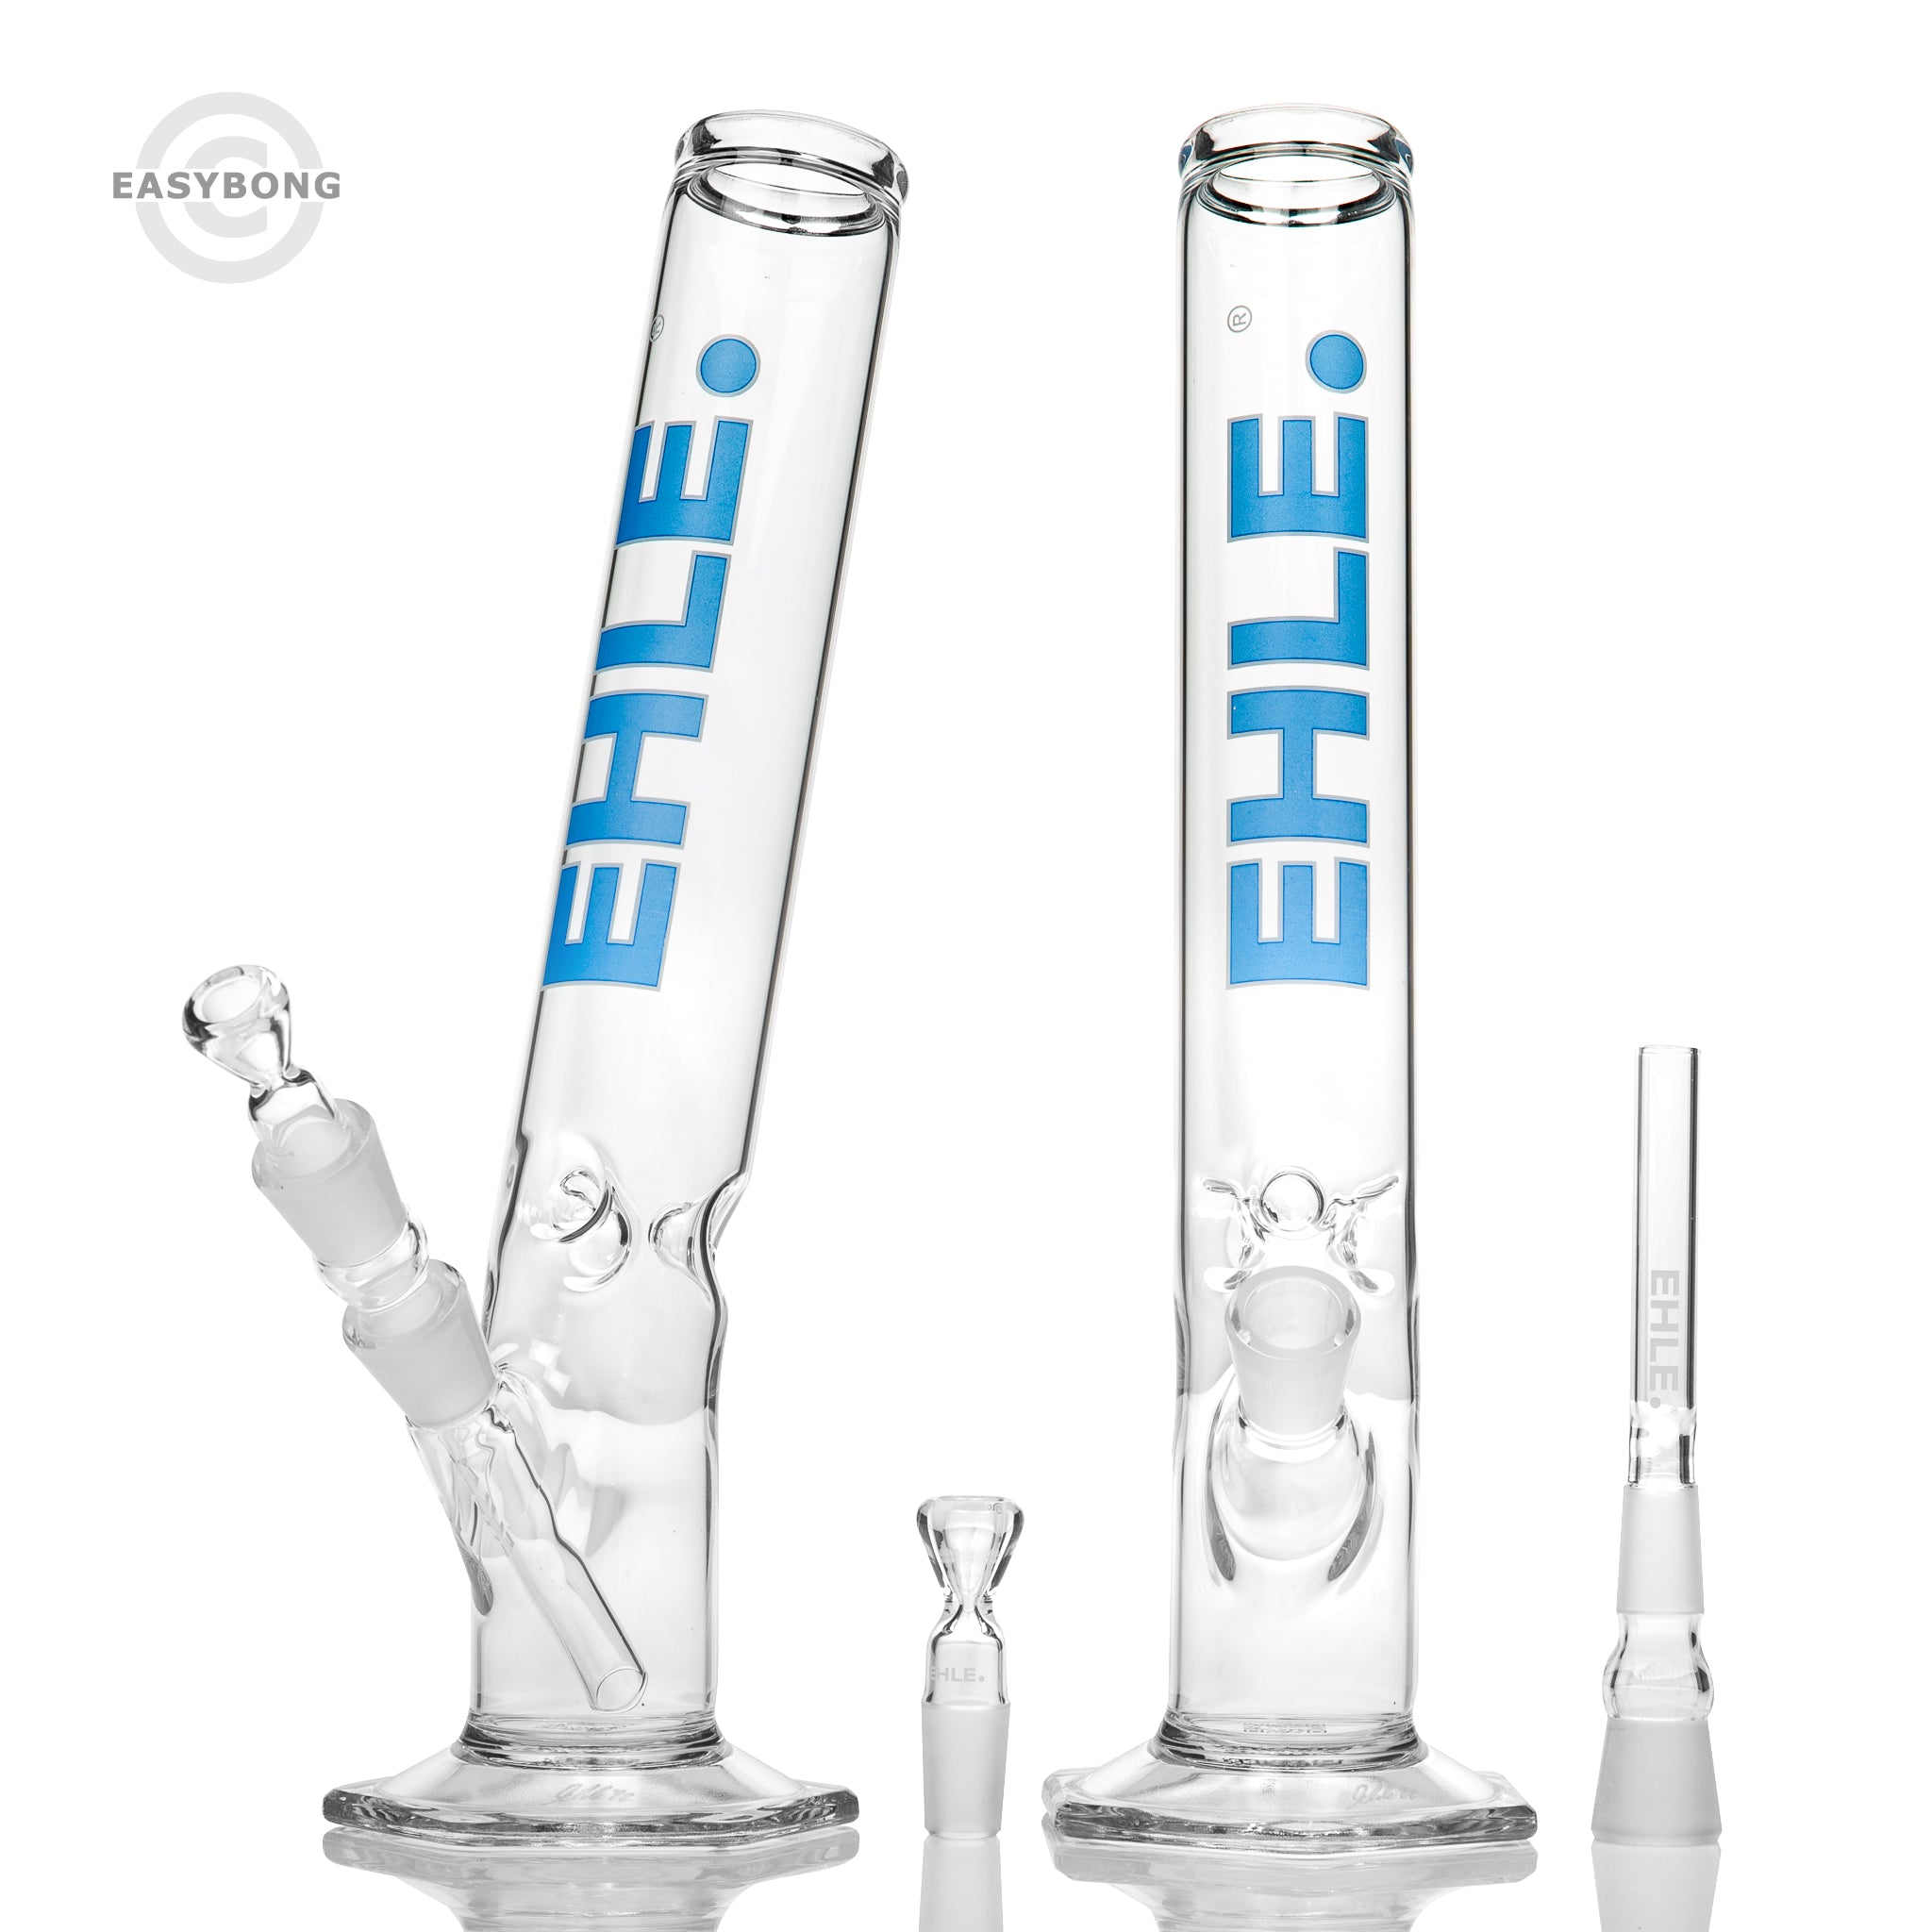 EHLE glass bongs online Australia.